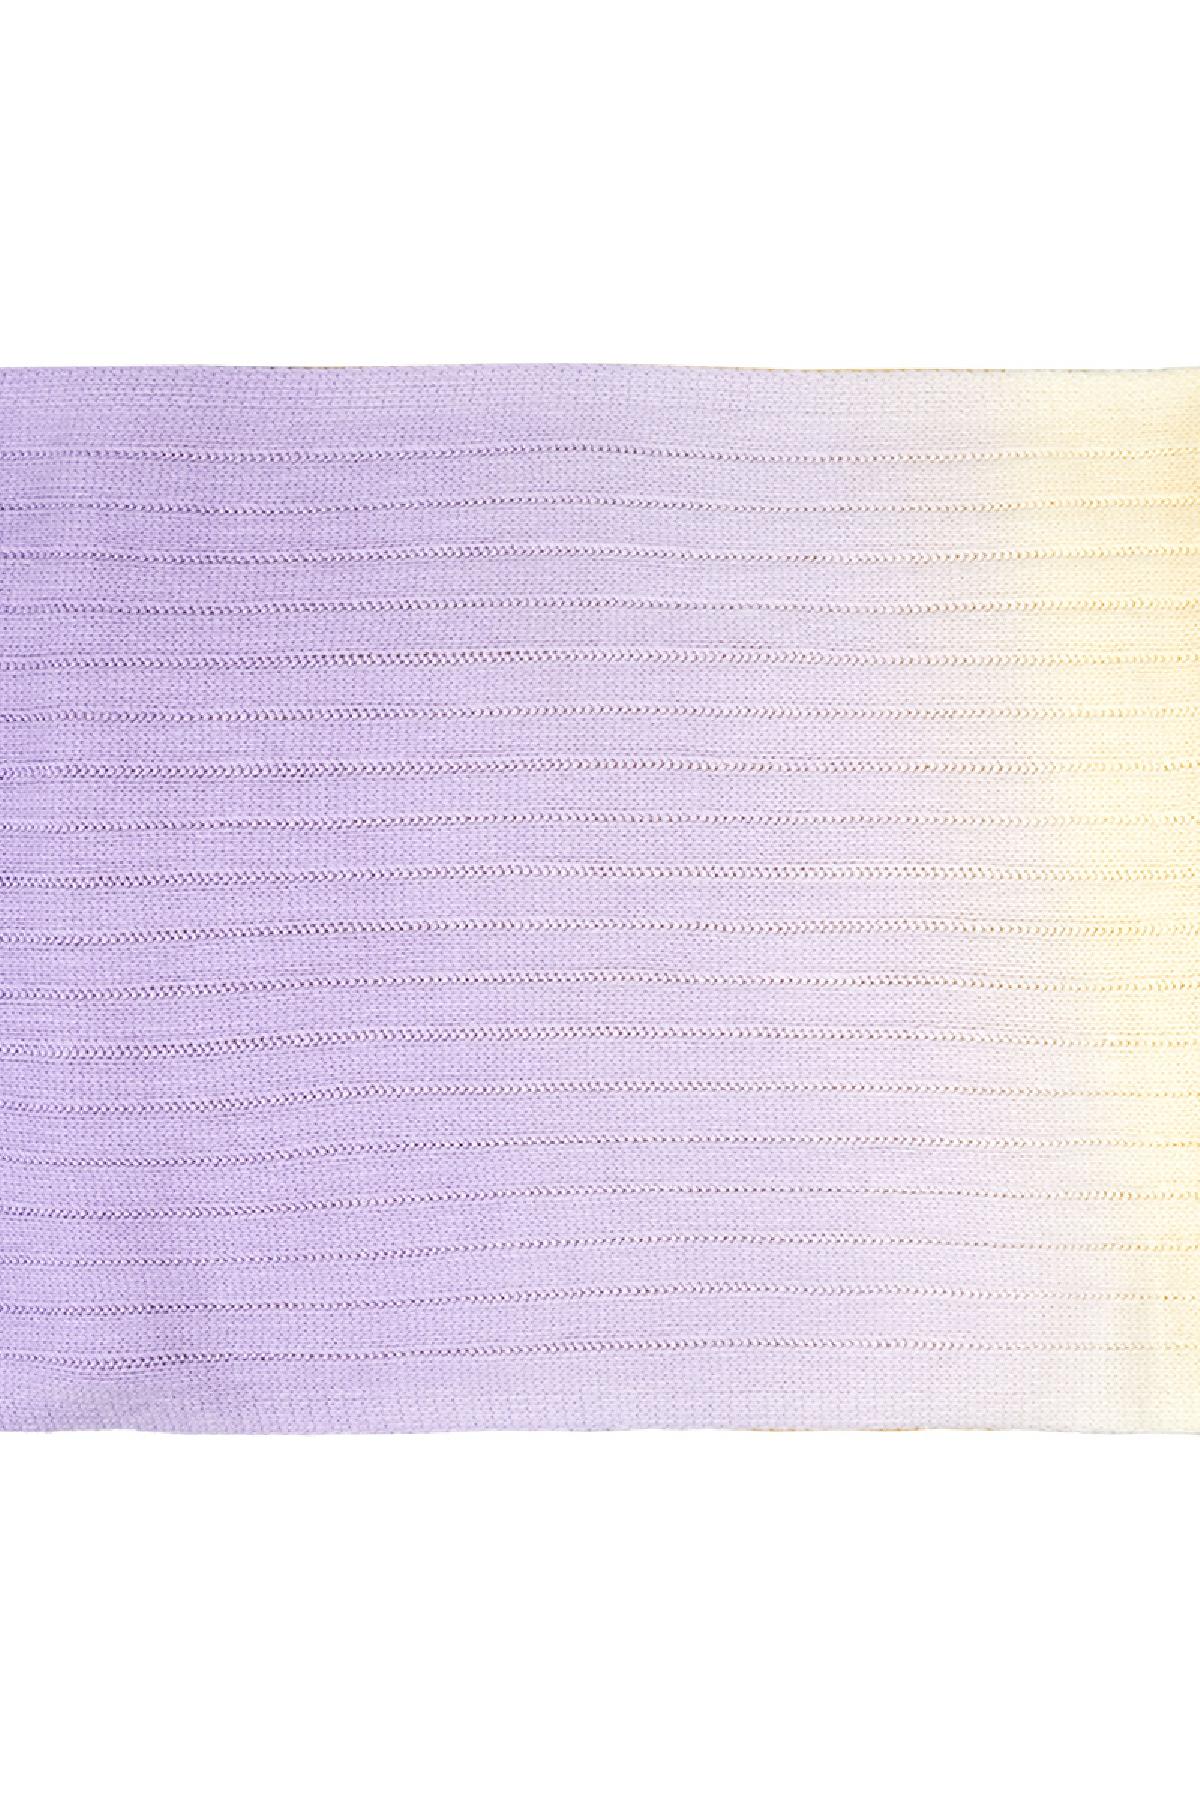 Kravat boya eşarp Purple Acrylic Resim3